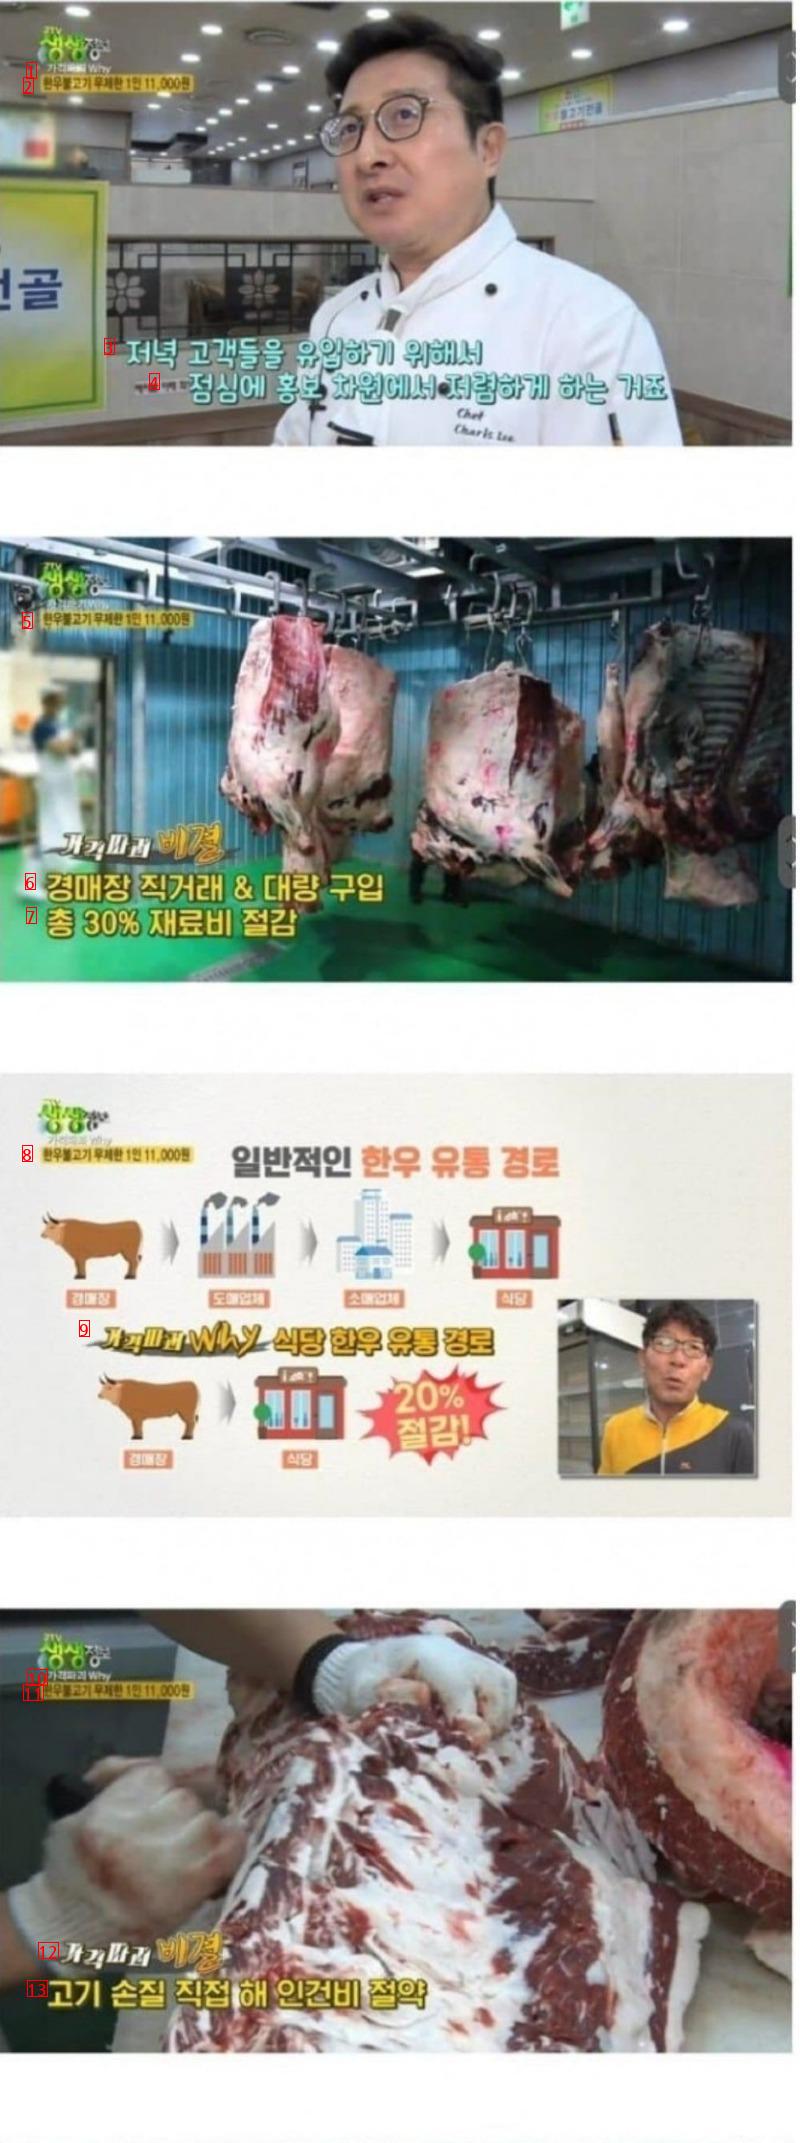 韓牛プルゴギ食べ放題11000ウォンのグルメの秘密